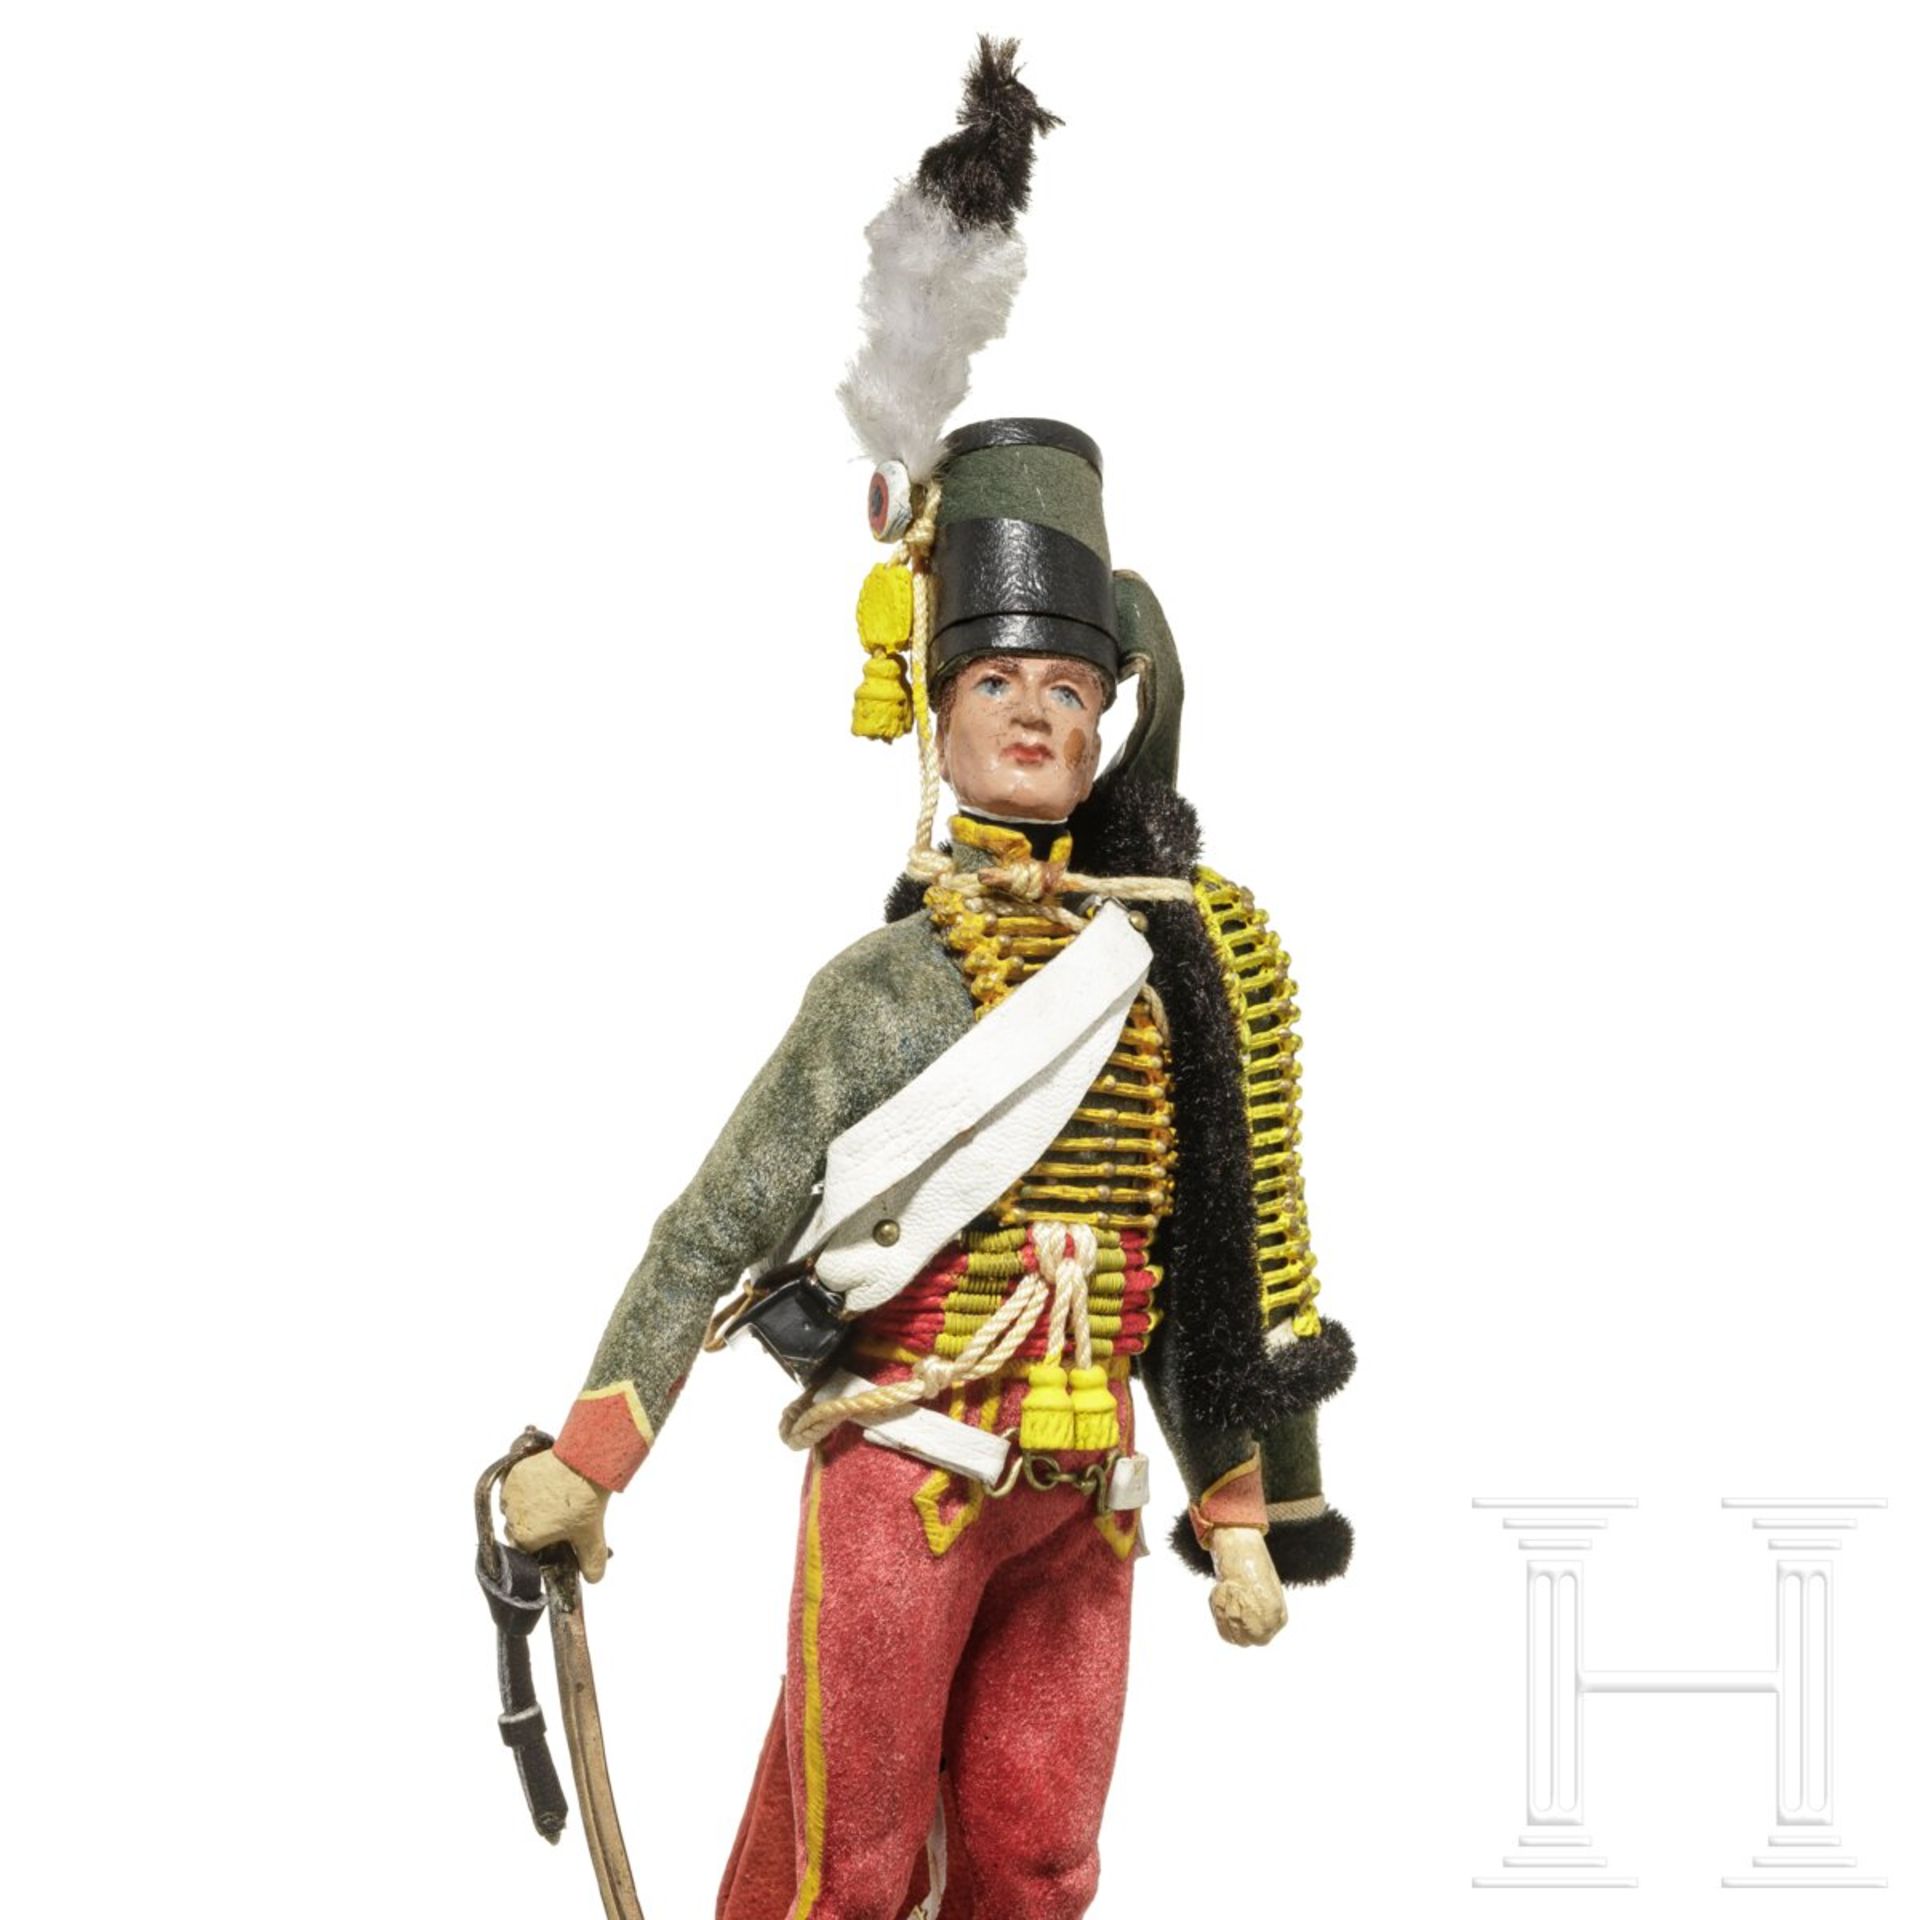 Husar um 1790 - Uniformfigur von Marcel Riffet, 20. Jhdt. - Bild 6 aus 6